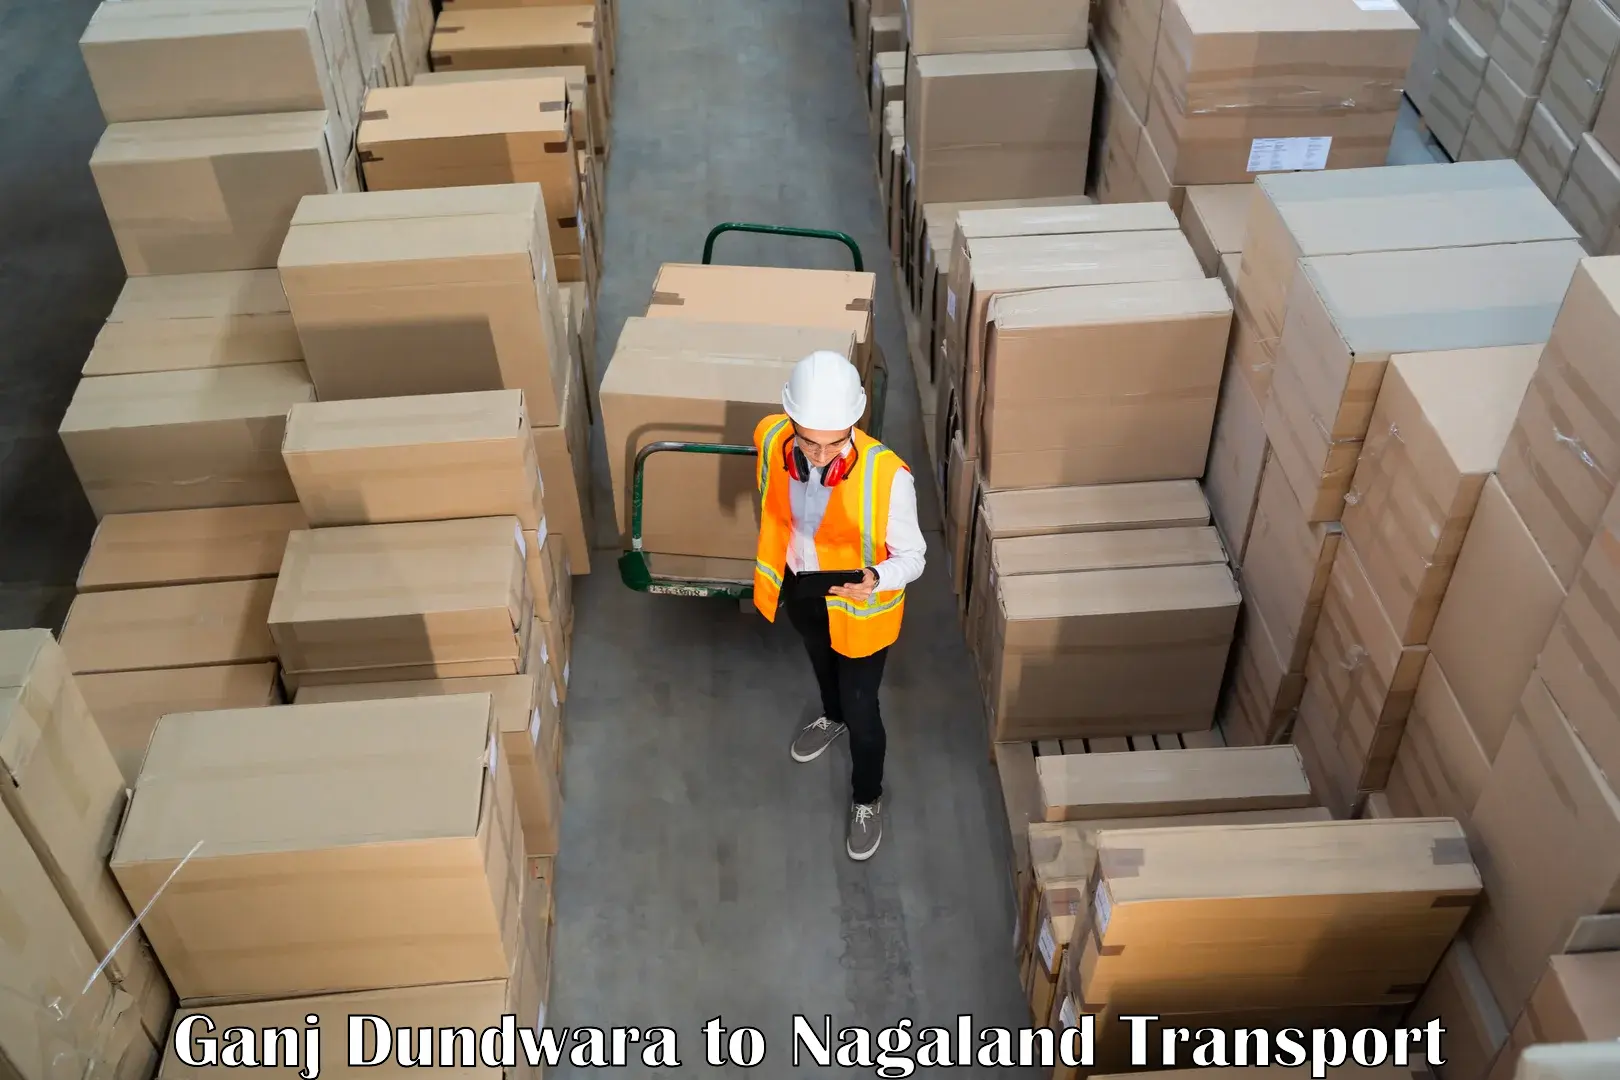 Two wheeler parcel service Ganj Dundwara to Tuensang